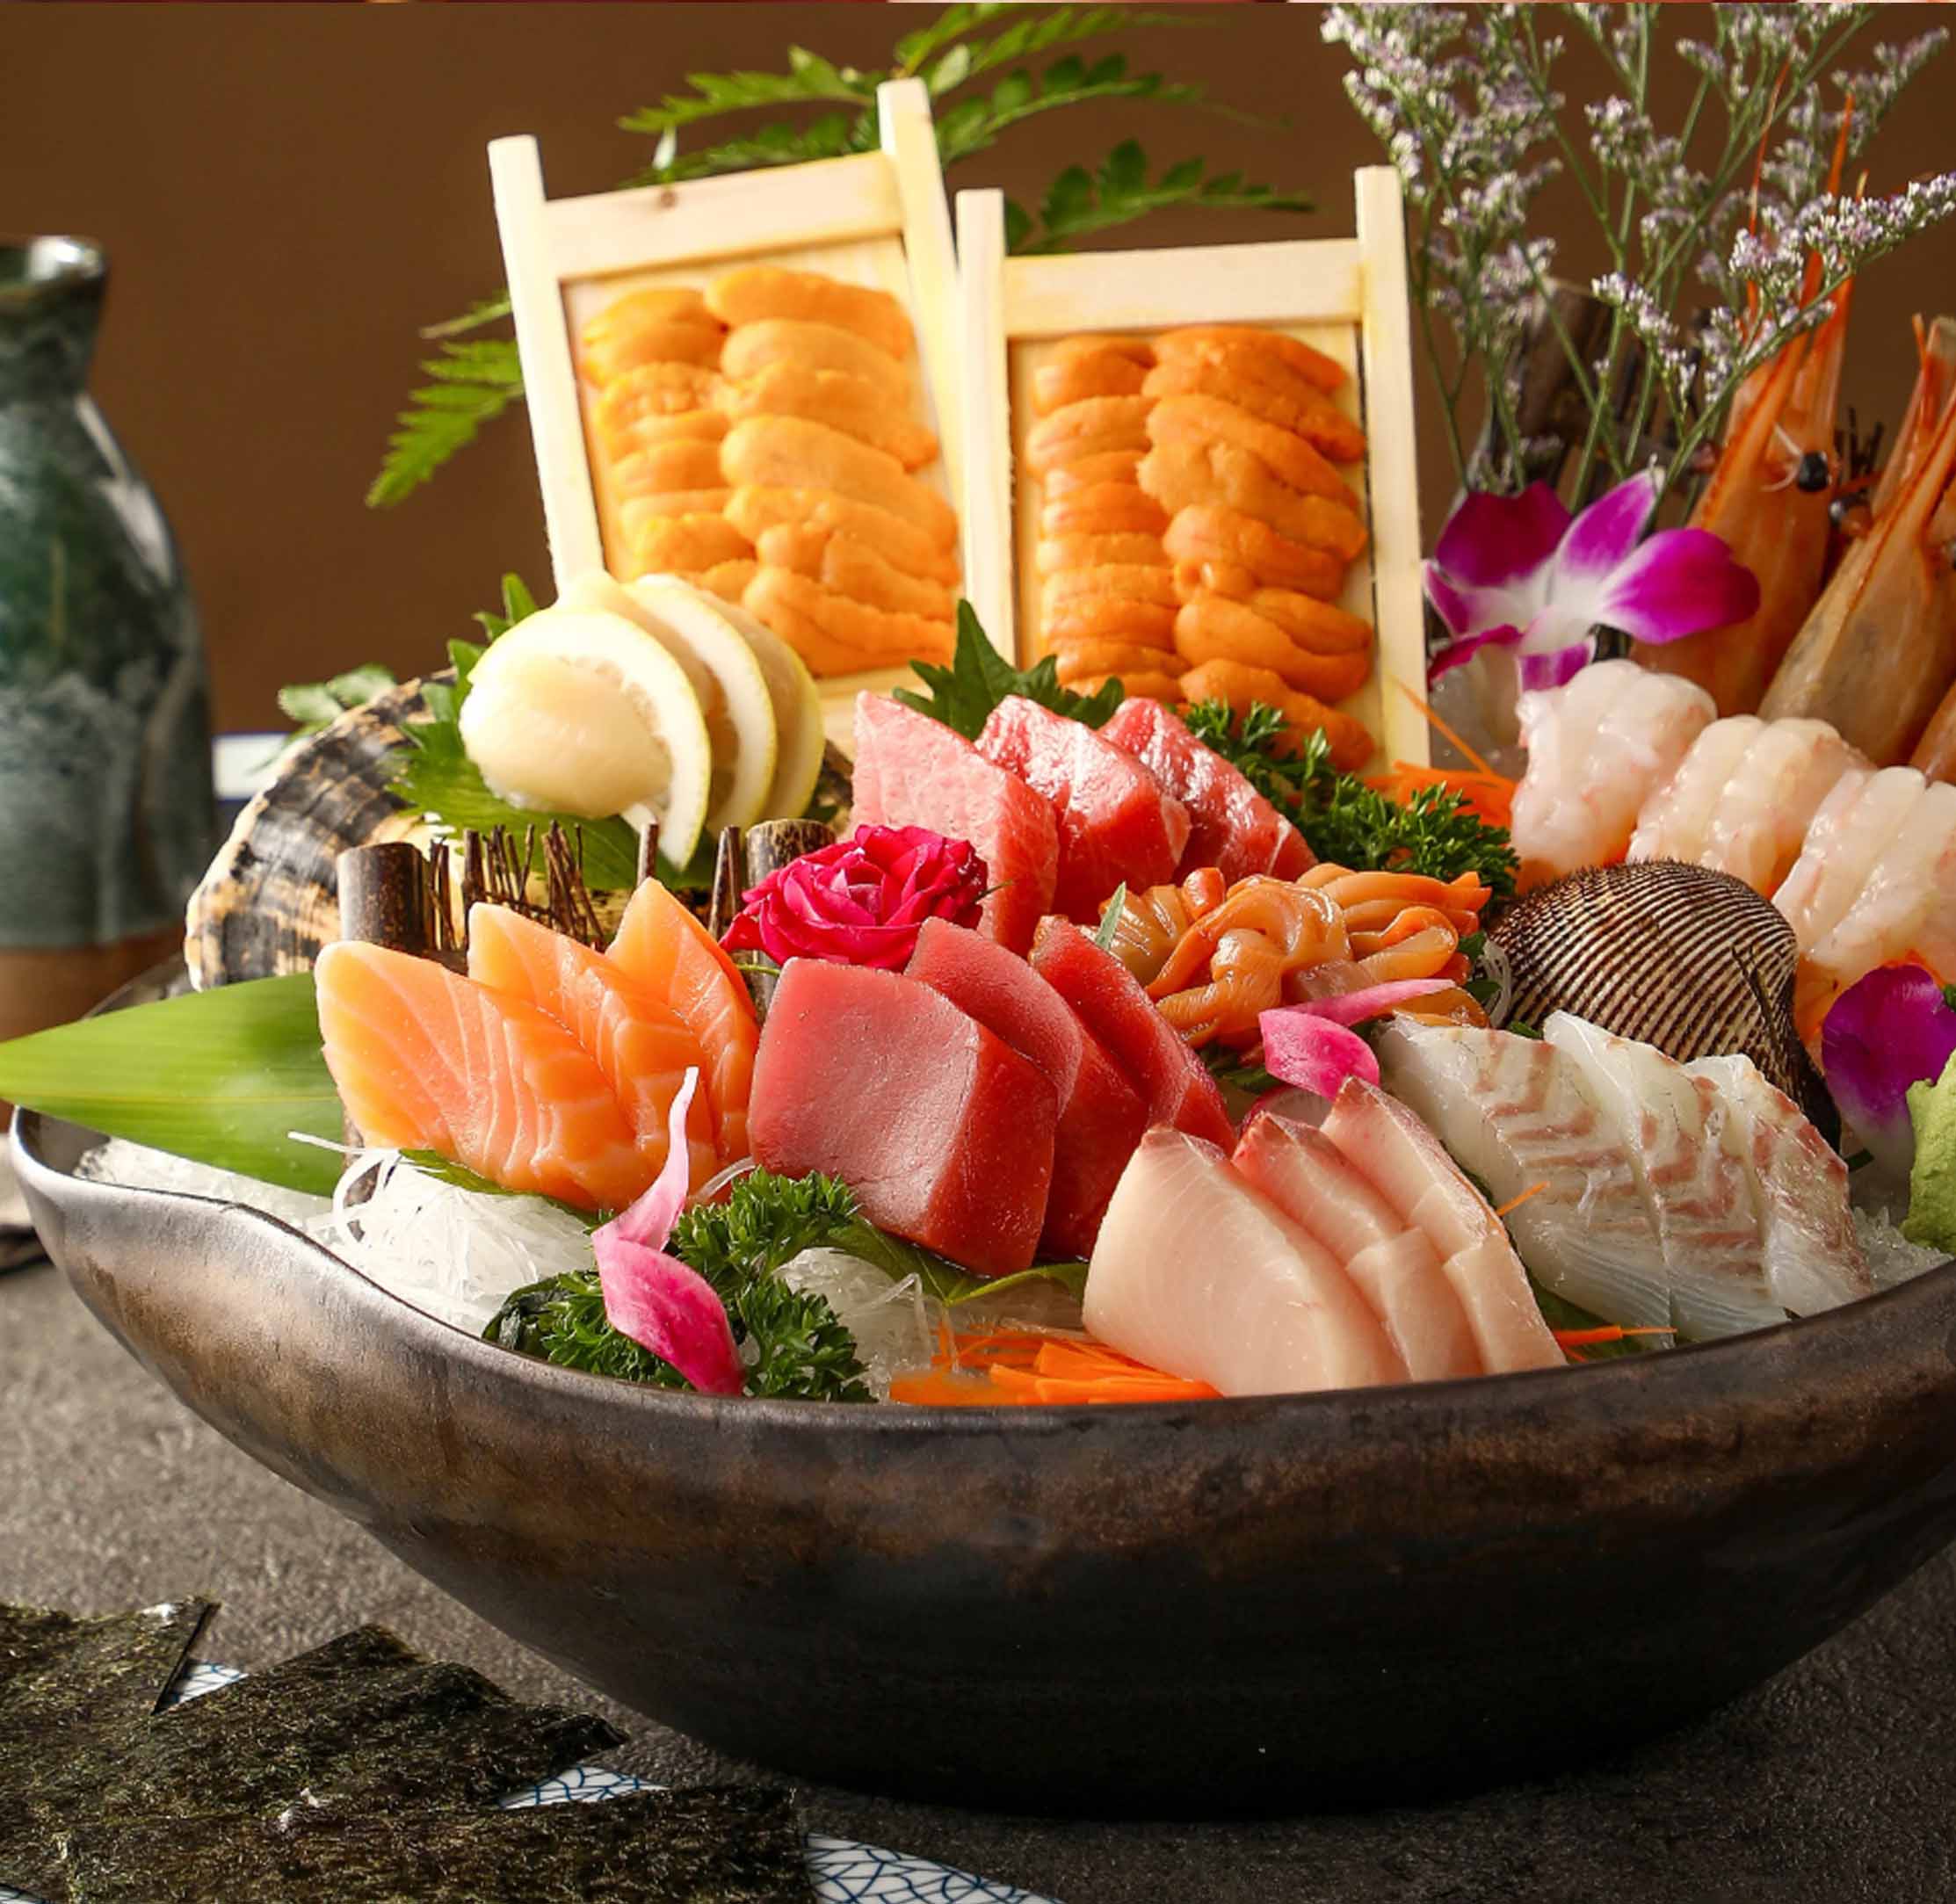 15 comidas japonesas que deberías degustar, no te arrepentirás